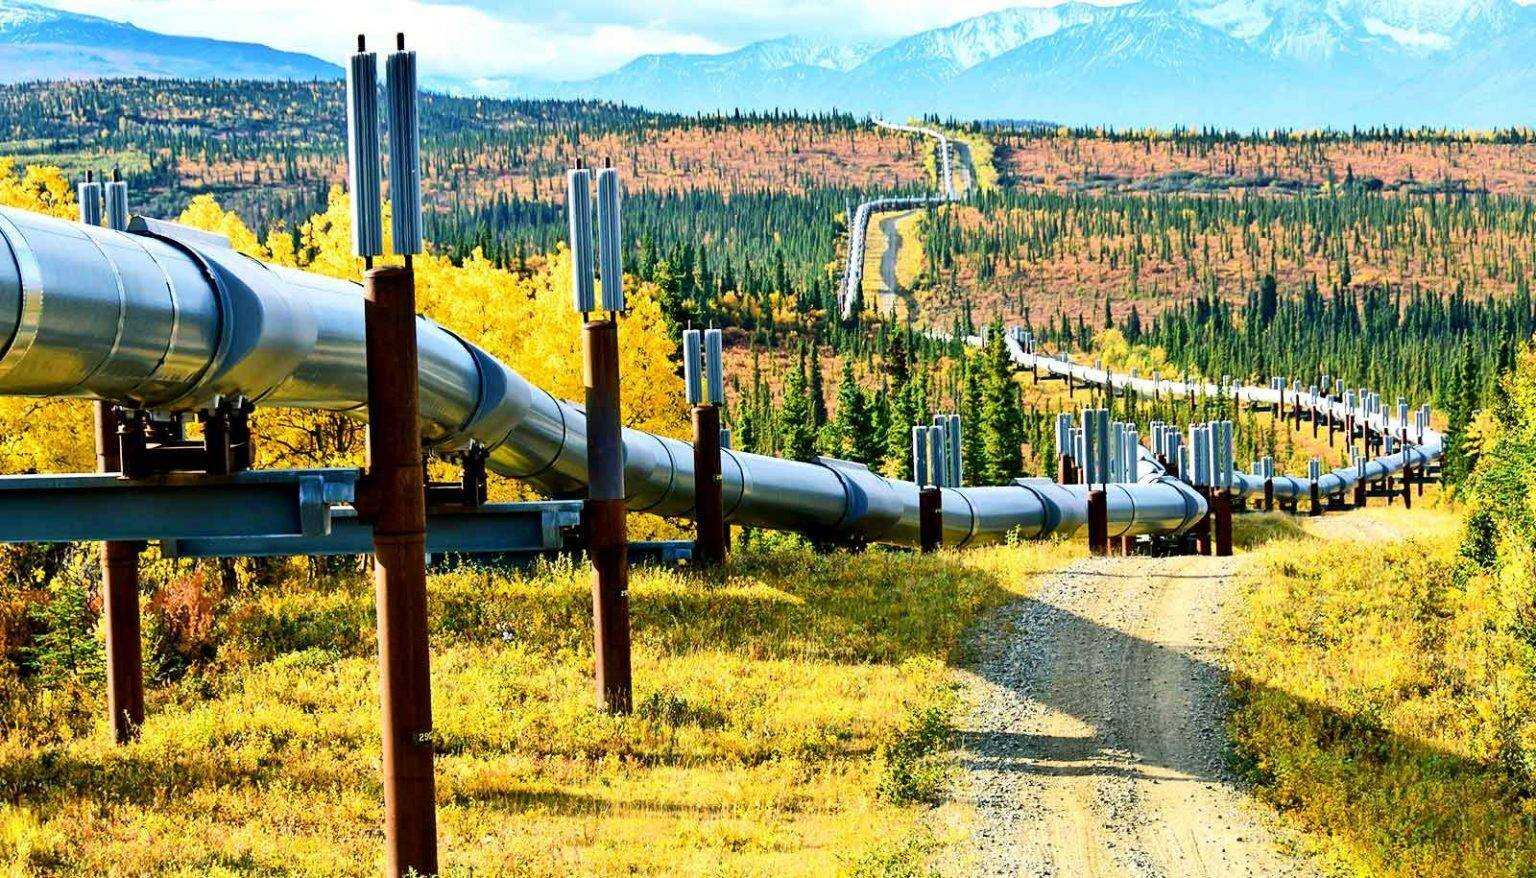 Трасса магистрального трубопровода. Трансаляскинский магистральный нефтепровод. Транс Аляска. Трубы для магистральных нефтепроводов. Лупинг газопровода что это.